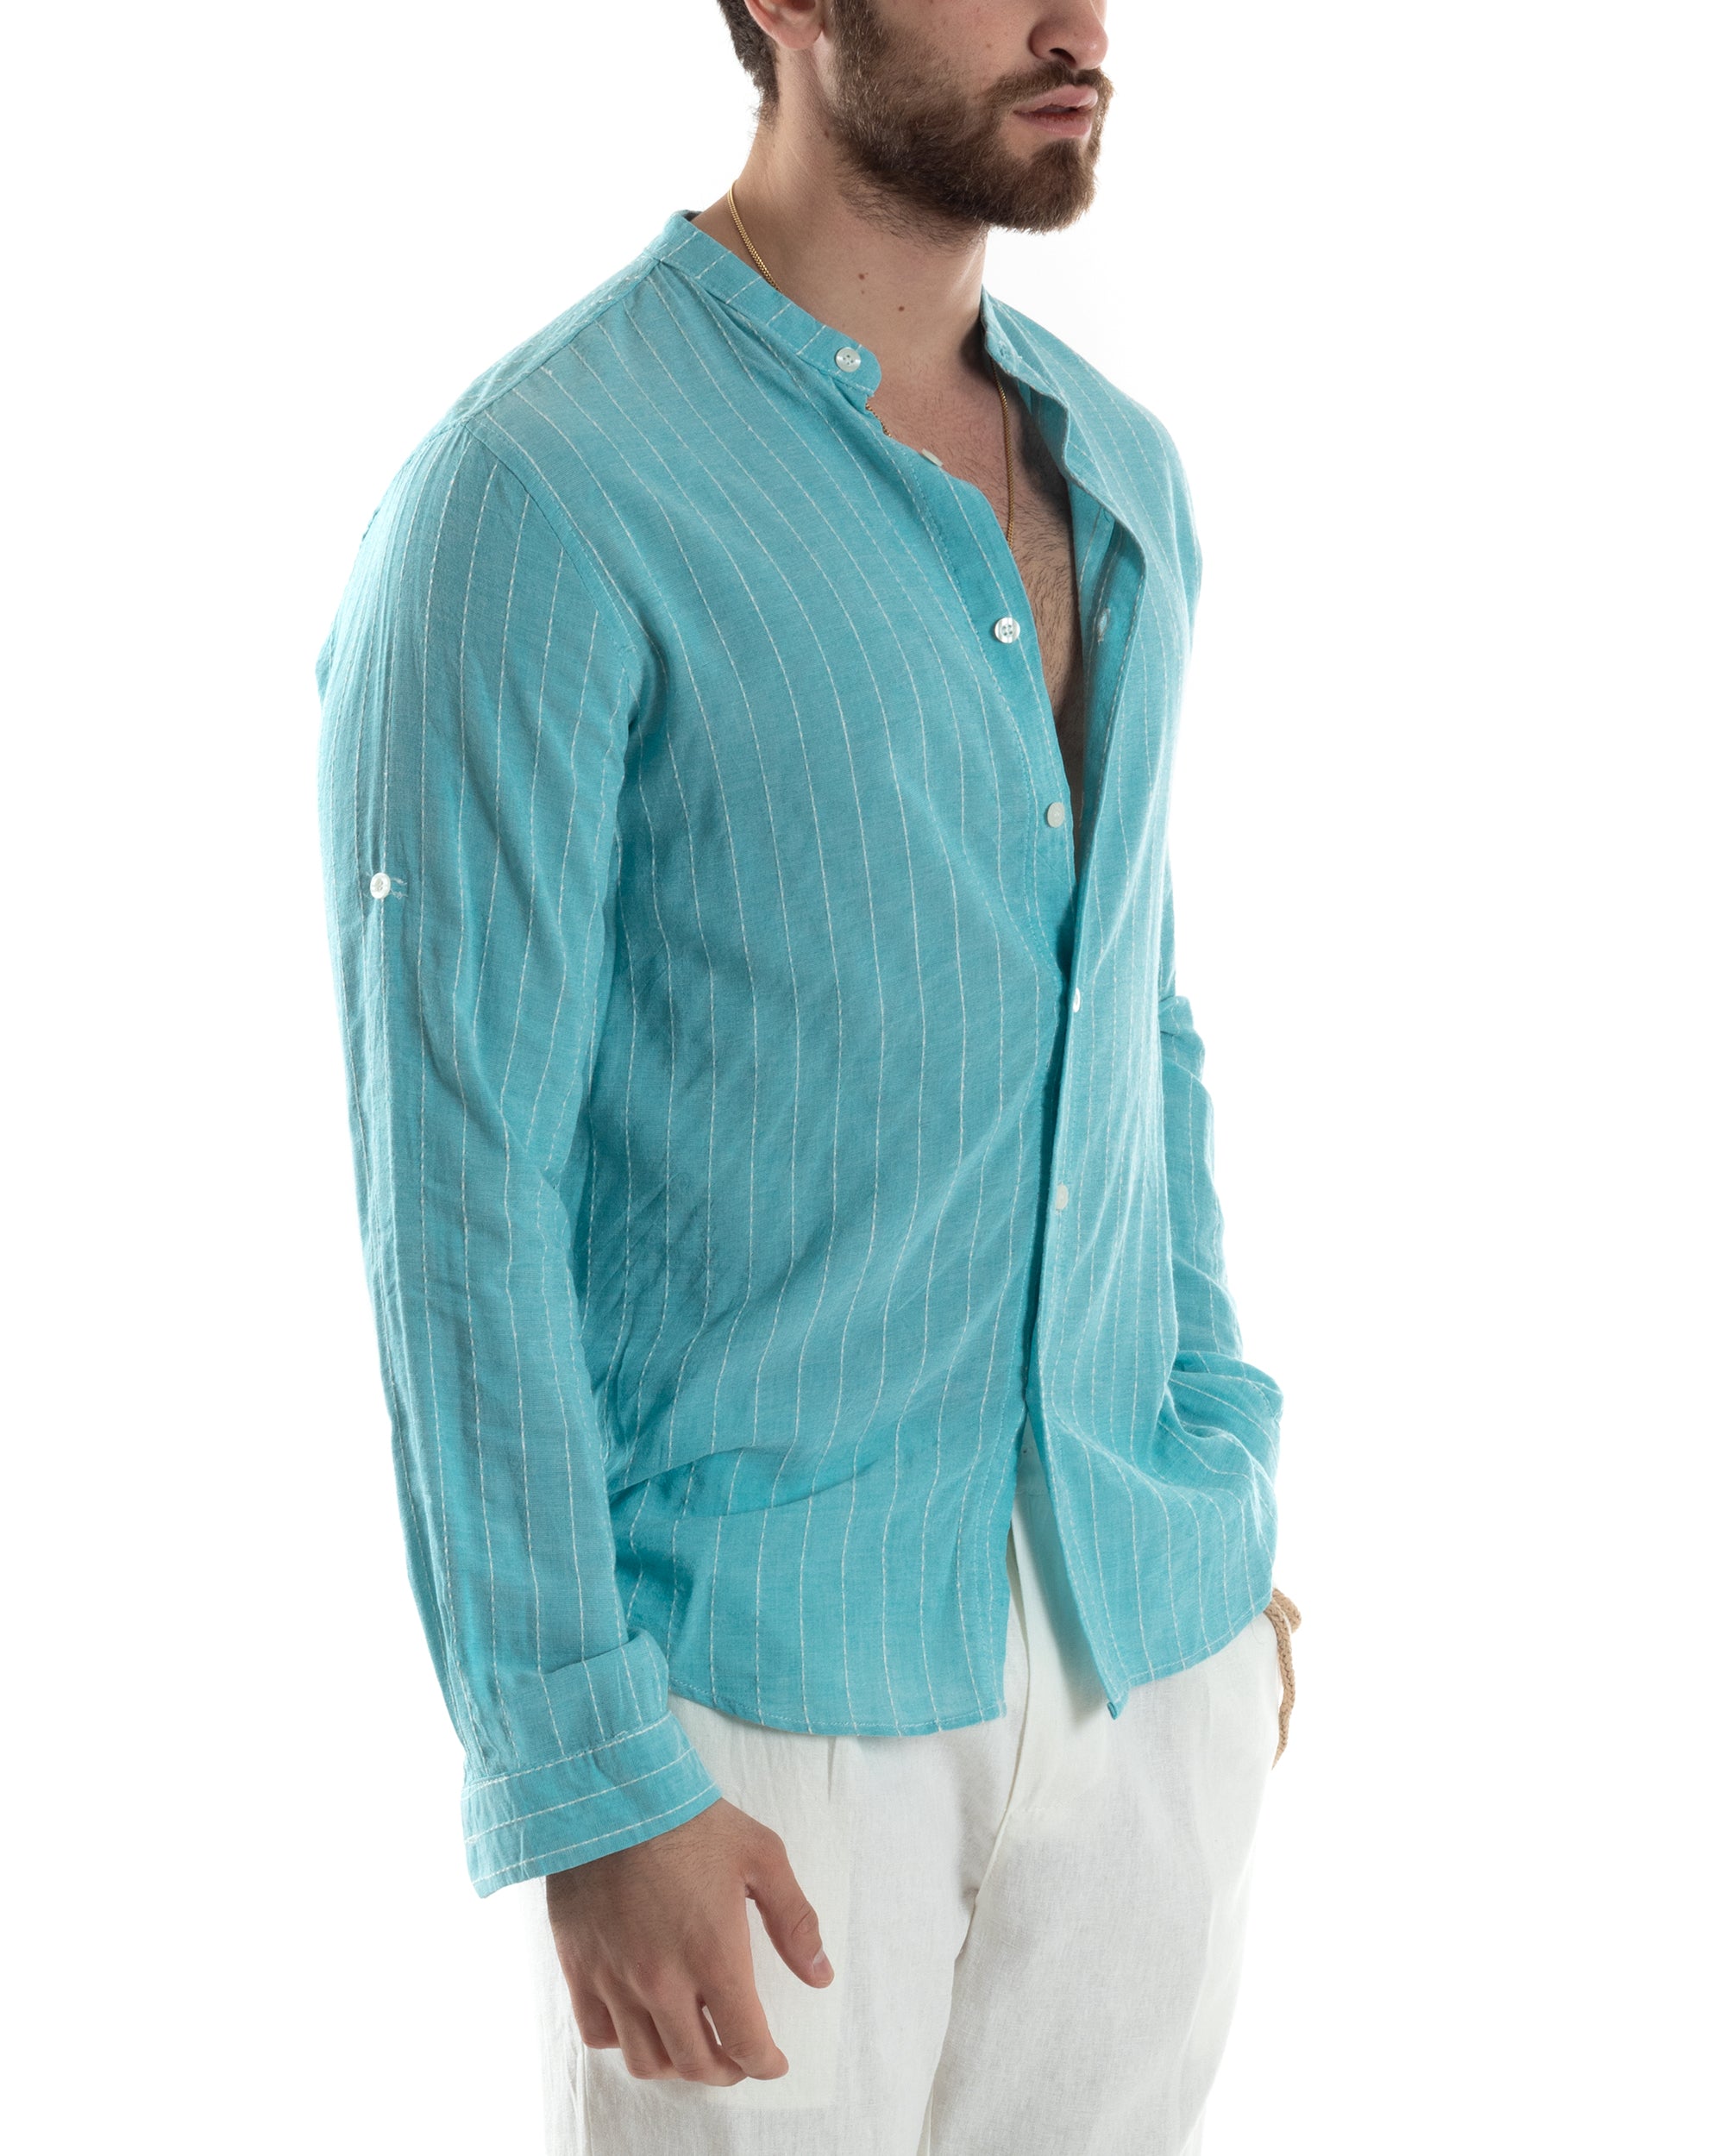 Camicia Uomo Collo Coreano Manica Lunga Lino Cotone Rigata Azzurro GIOSAL-C2832A